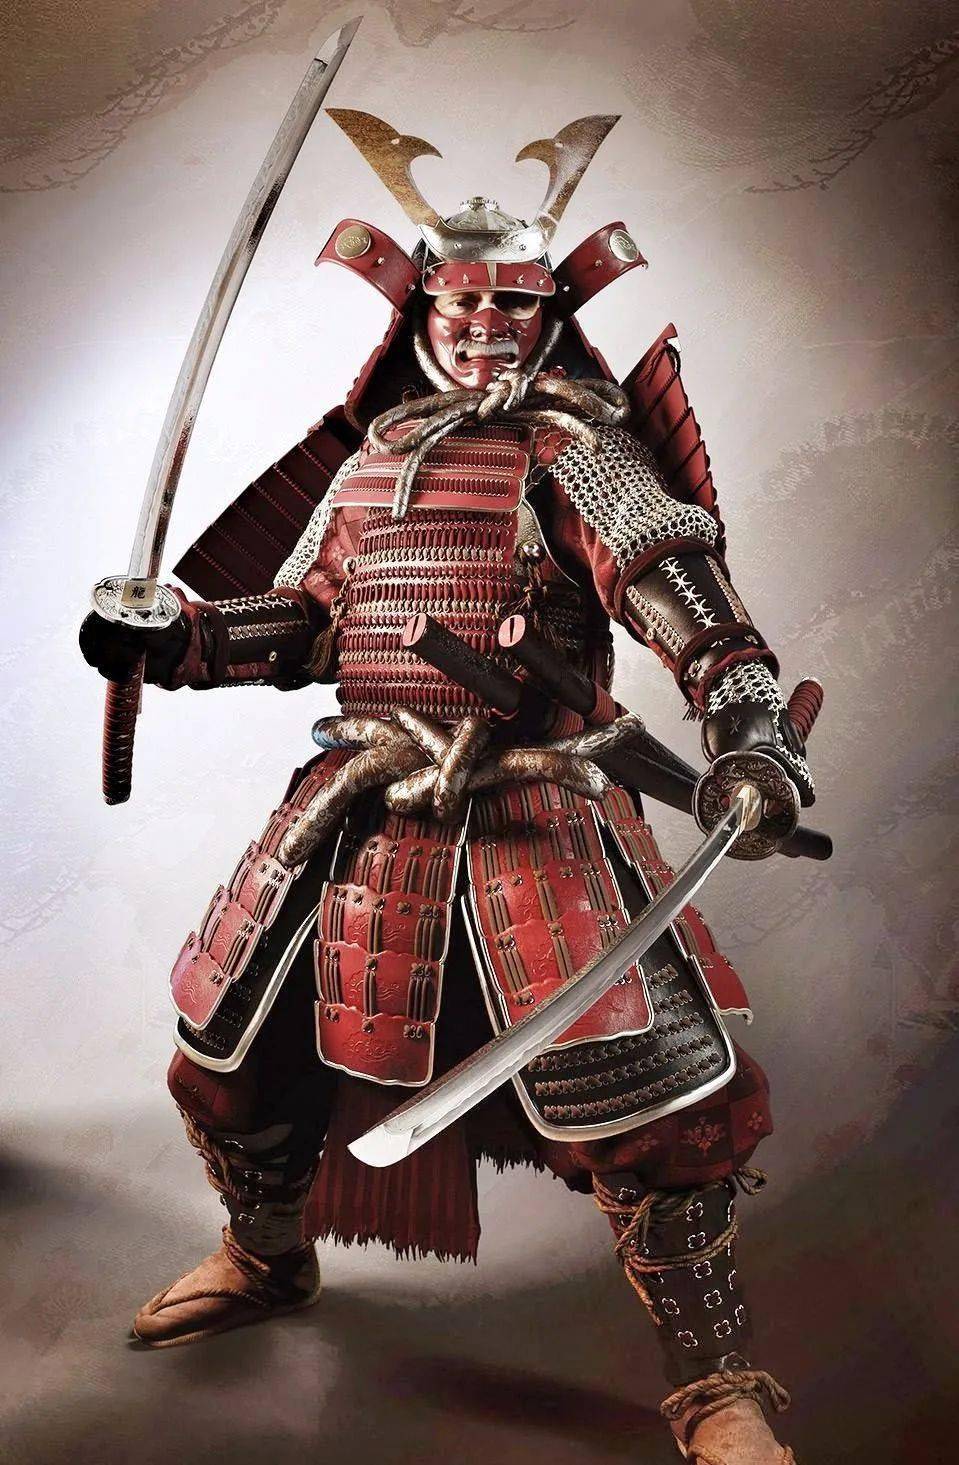 只见一个手持日本武士刀,身着中世纪武士服(samurai)的"鬼"正追向人们